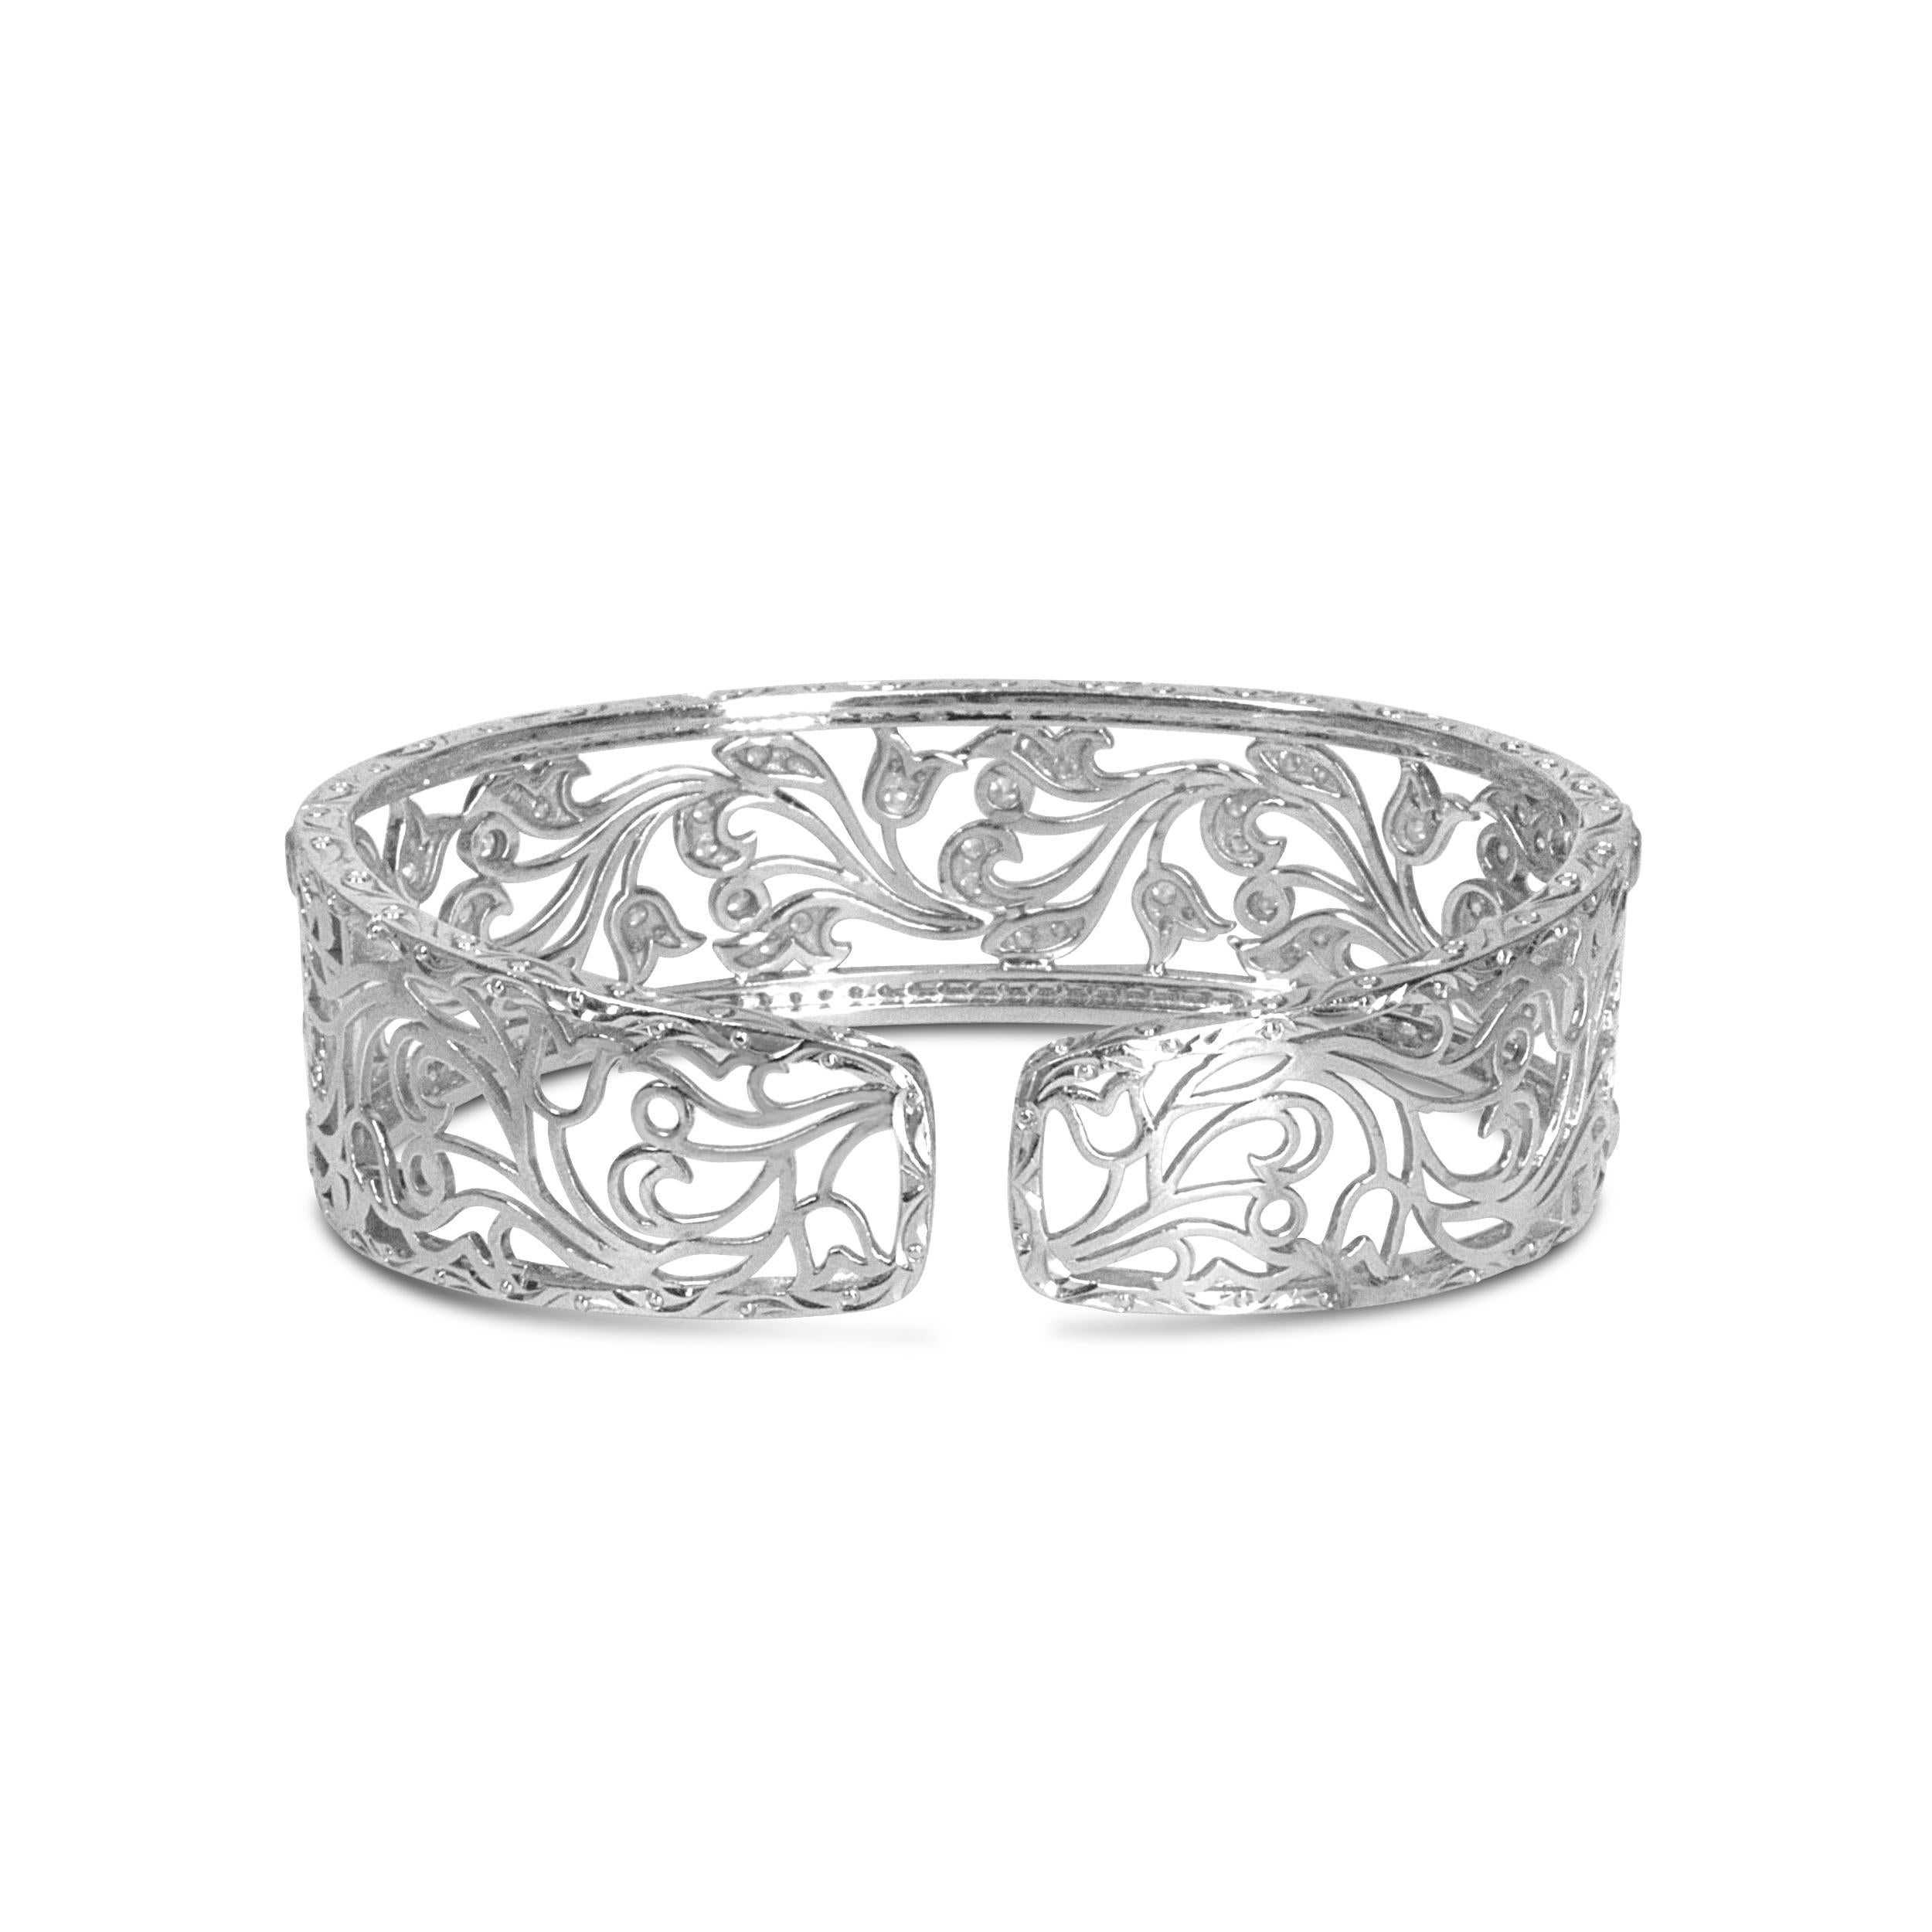 Diese prächtige durchbrochene Armspange ist ein Prunkstück mit 164 runden weißen Diamanten in einer eleganten Pflasterfassung. Ein prächtiges durchbrochenes, florales, filigranes Wirbeldesign macht dieses Schmuckstück atemberaubend, und es strahlt